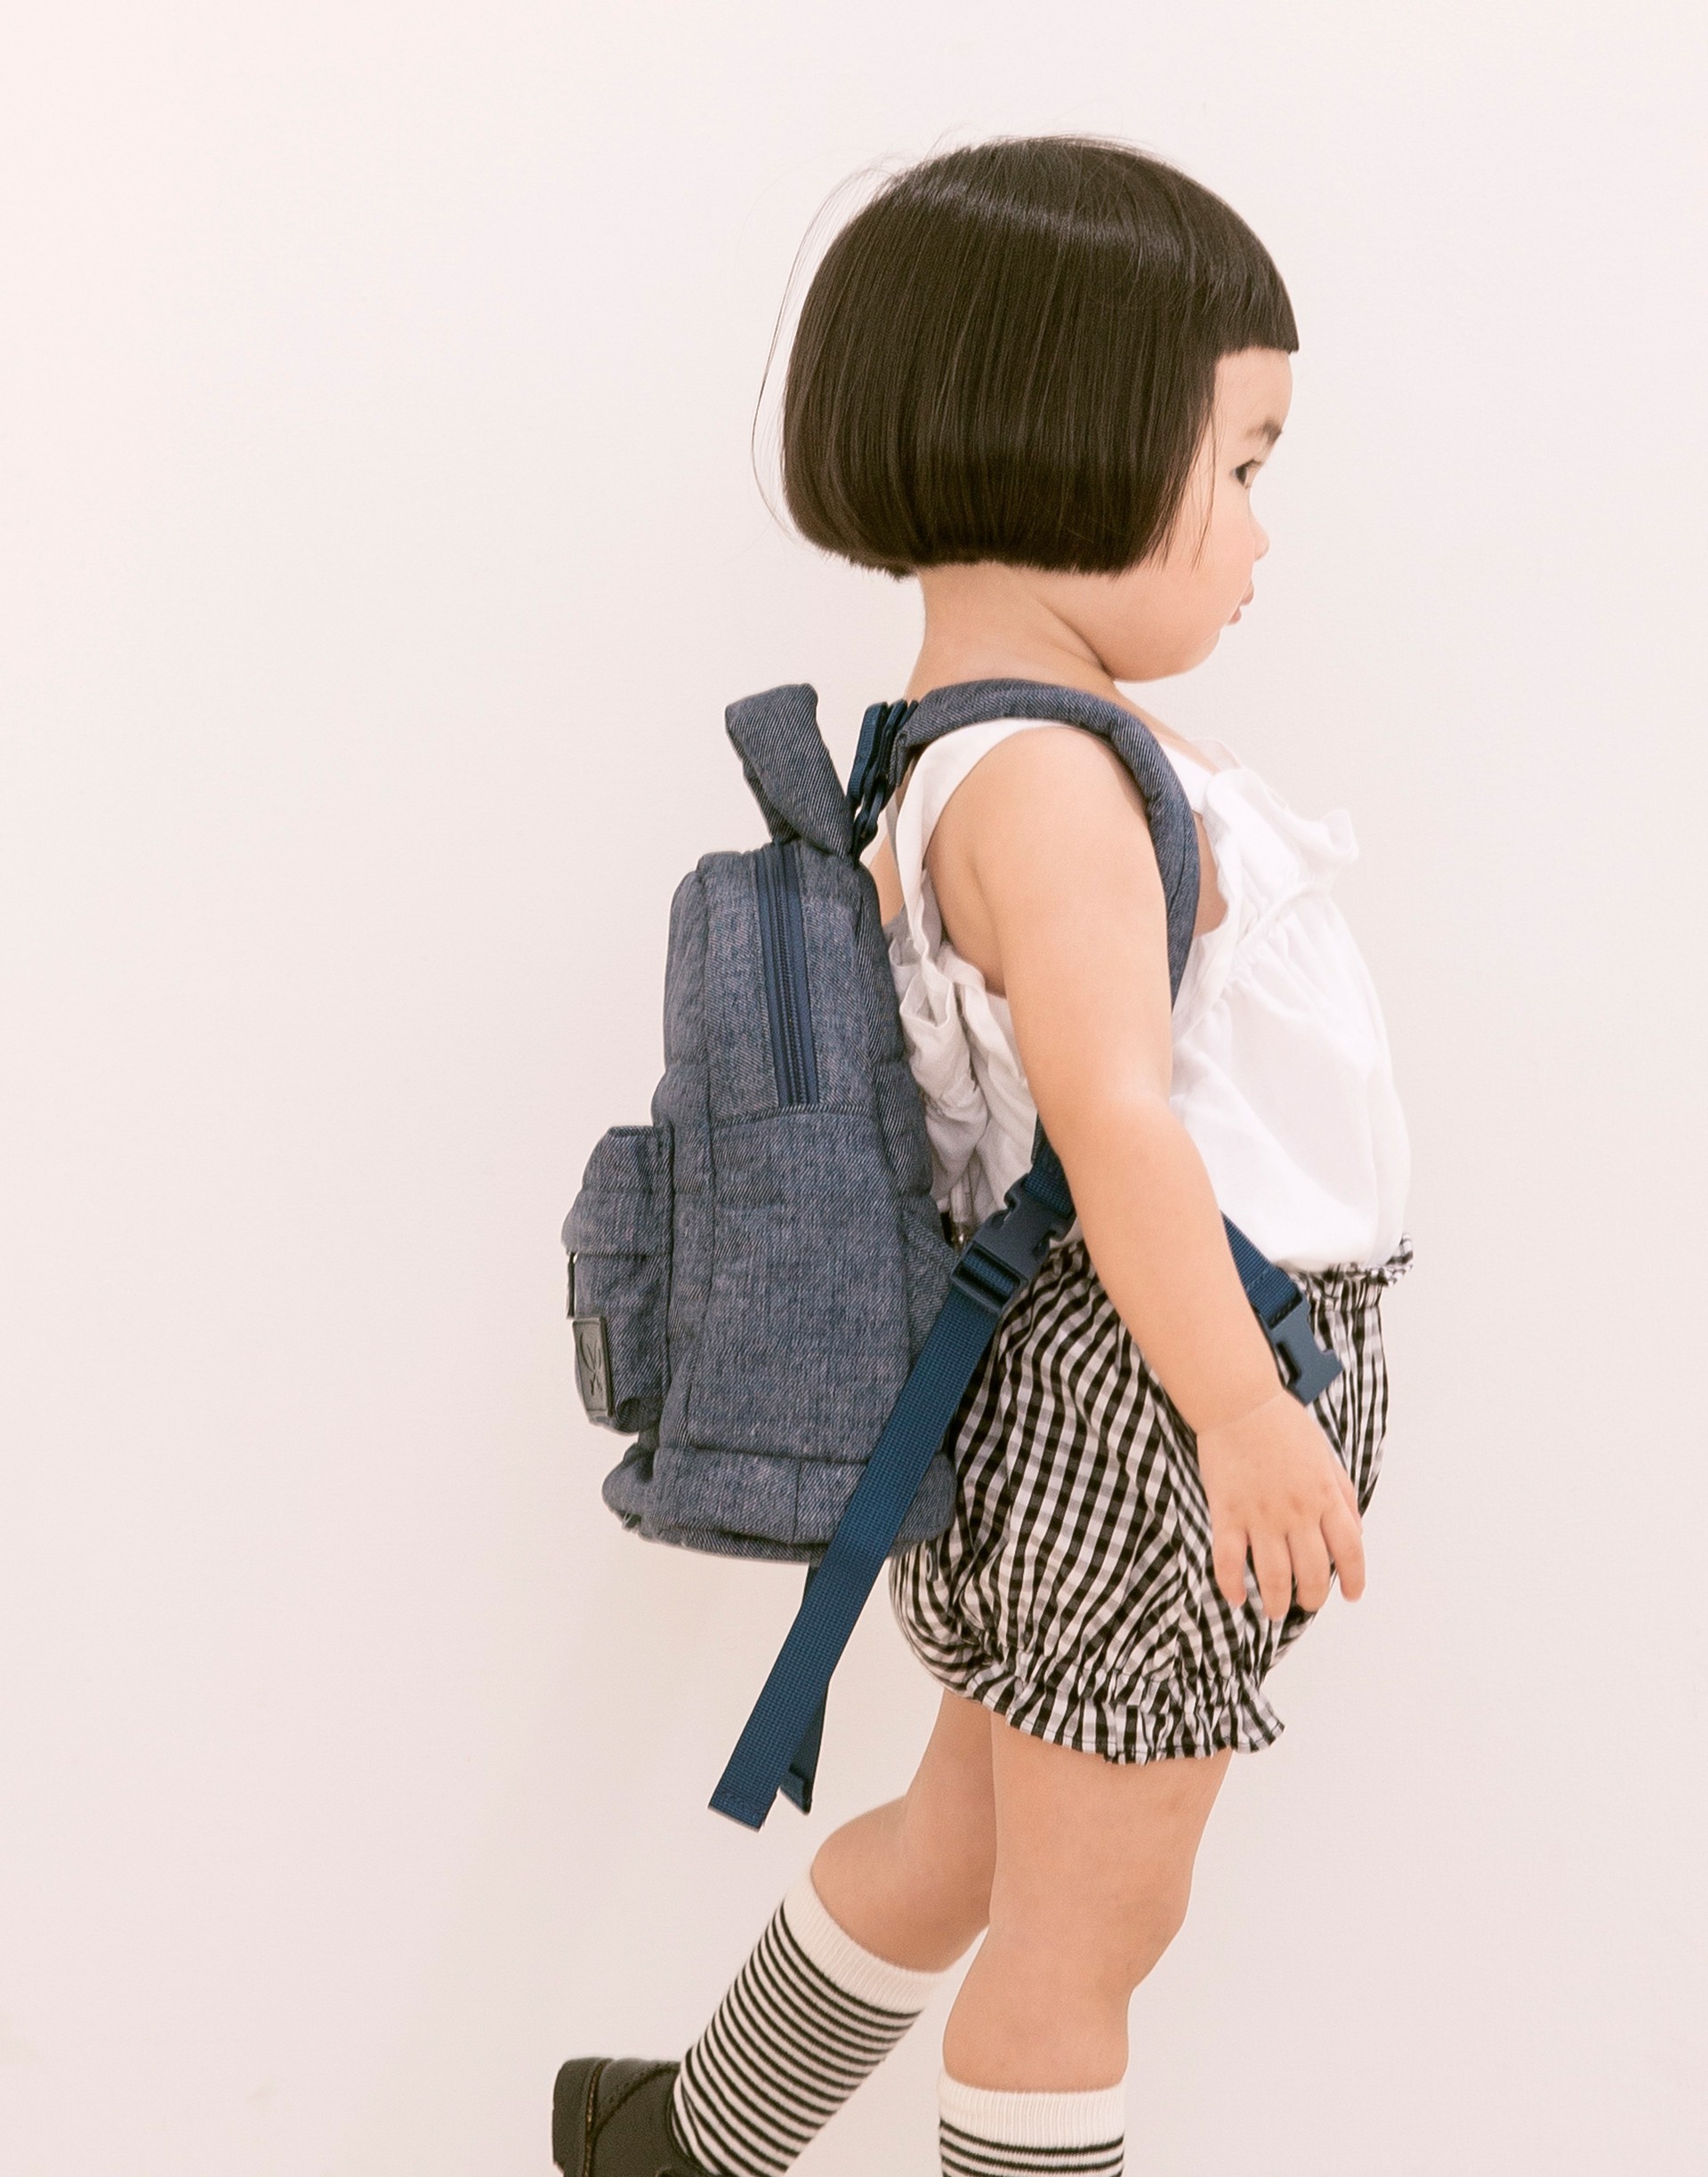 兩用可拆式背帶，大人小孩皆可背、輕盈的空氣質感背包、包包內夾層和拉鍊袋可放置小物品 、附有背扣，可防止背帶滑落問題 、附上防走失牽繩，增加安全性